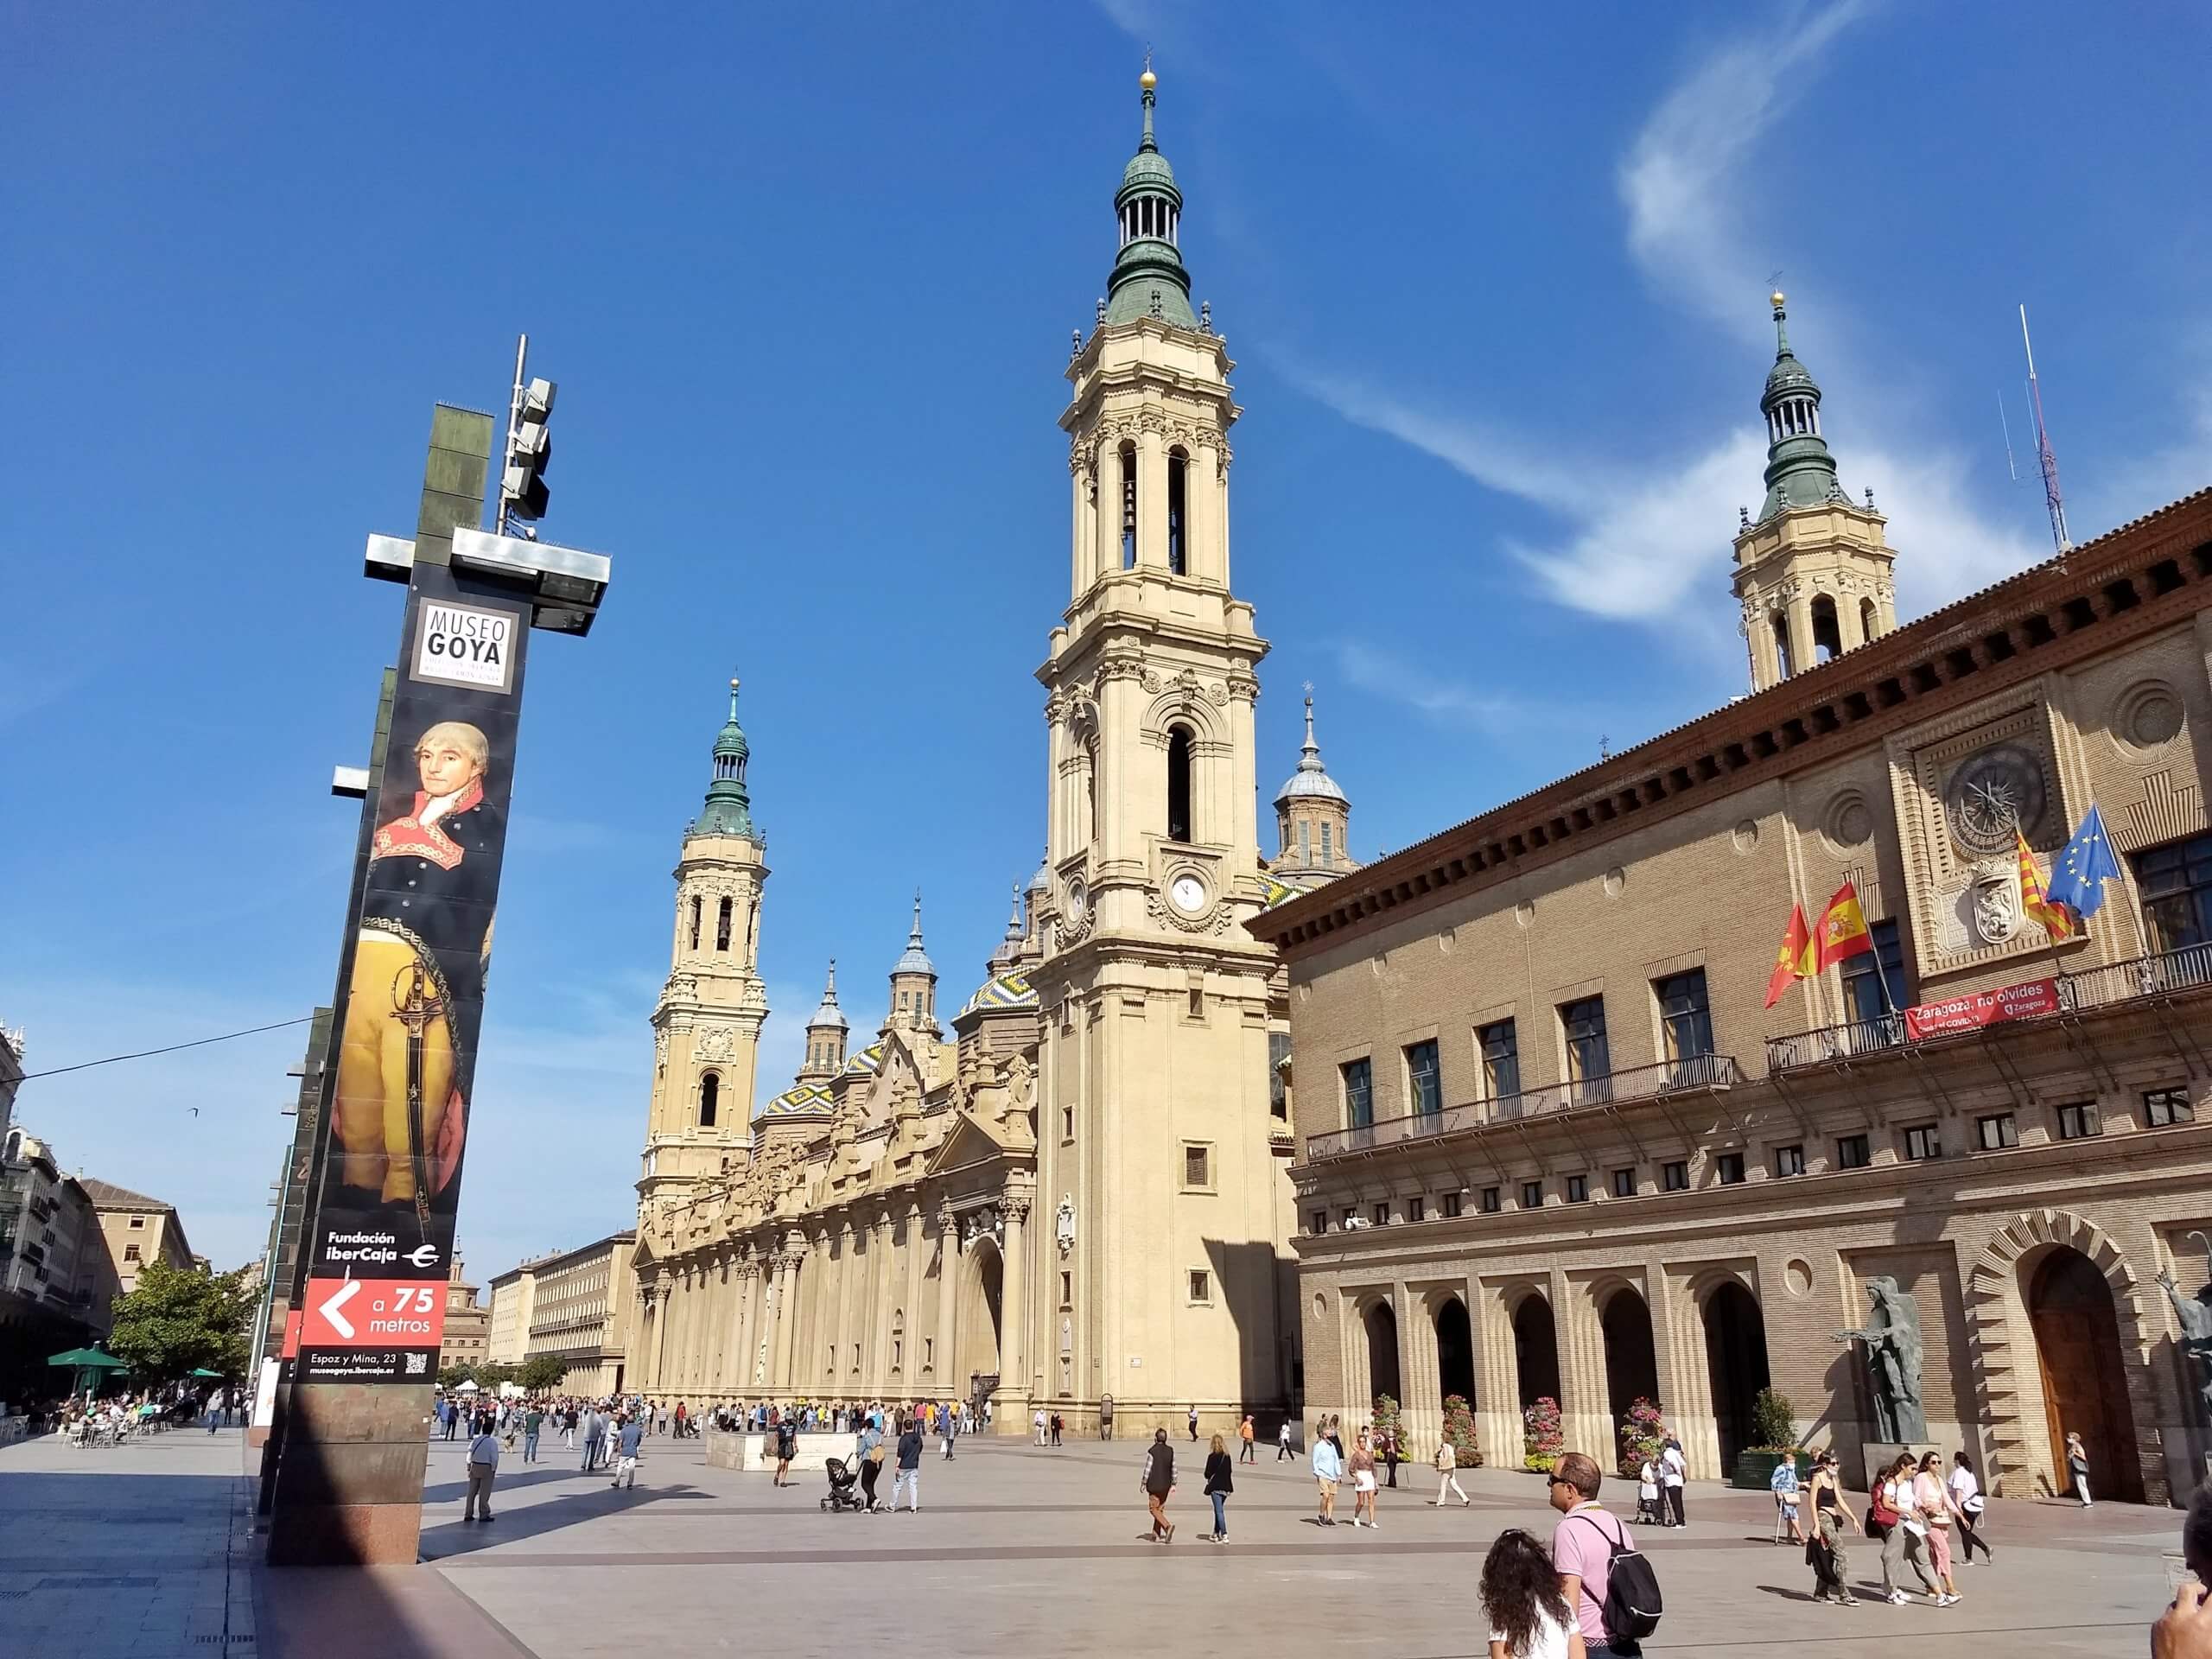 Zaragoza - Basilica de Nuestra Señora del Pilar